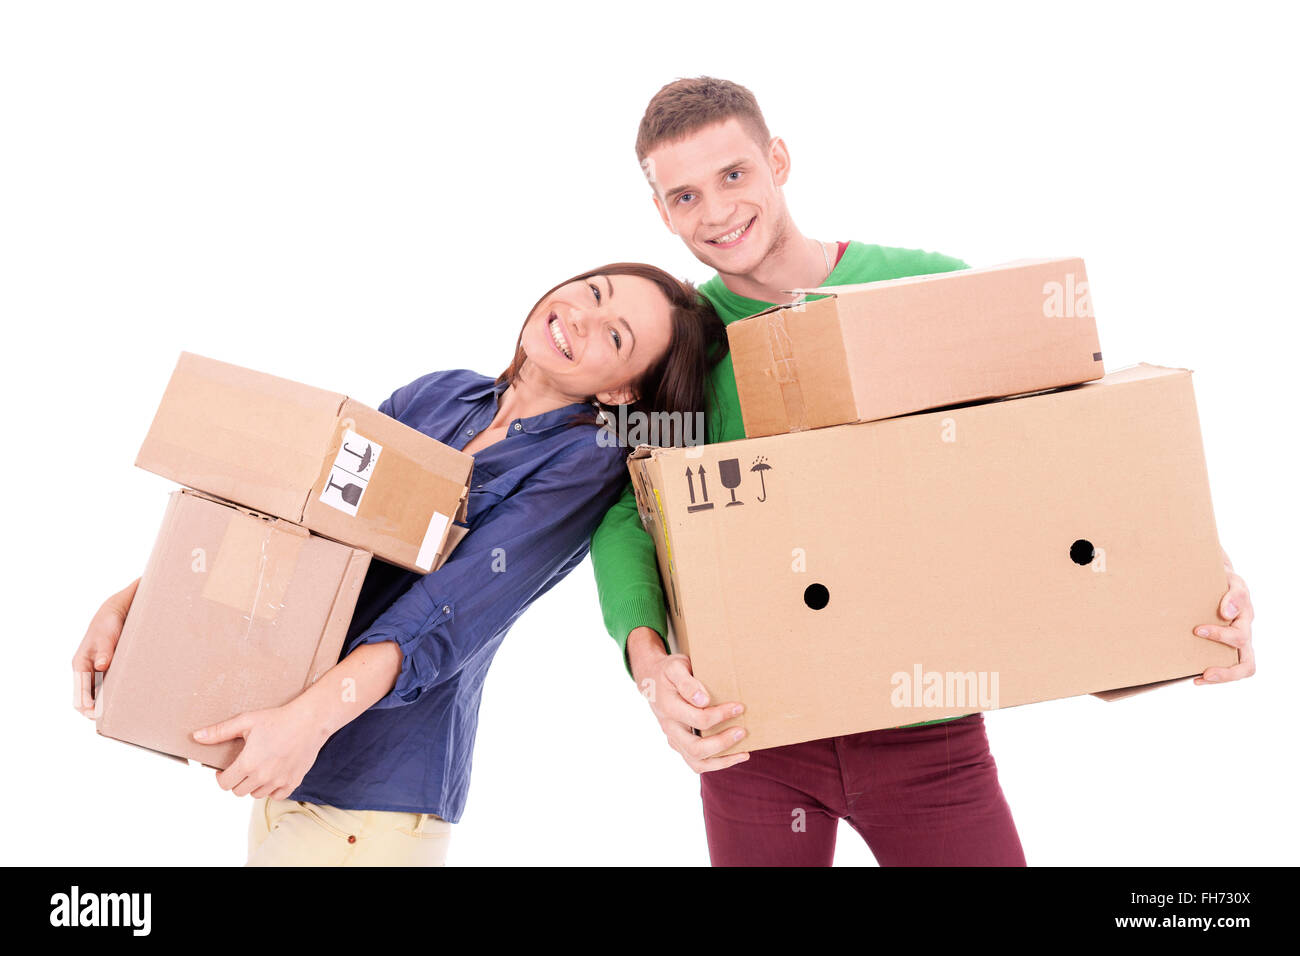 Un jeune couple habillé en passant des boîtes en carton. Peut-être passer à un nouvel appartement ou maison ensemble. Banque D'Images